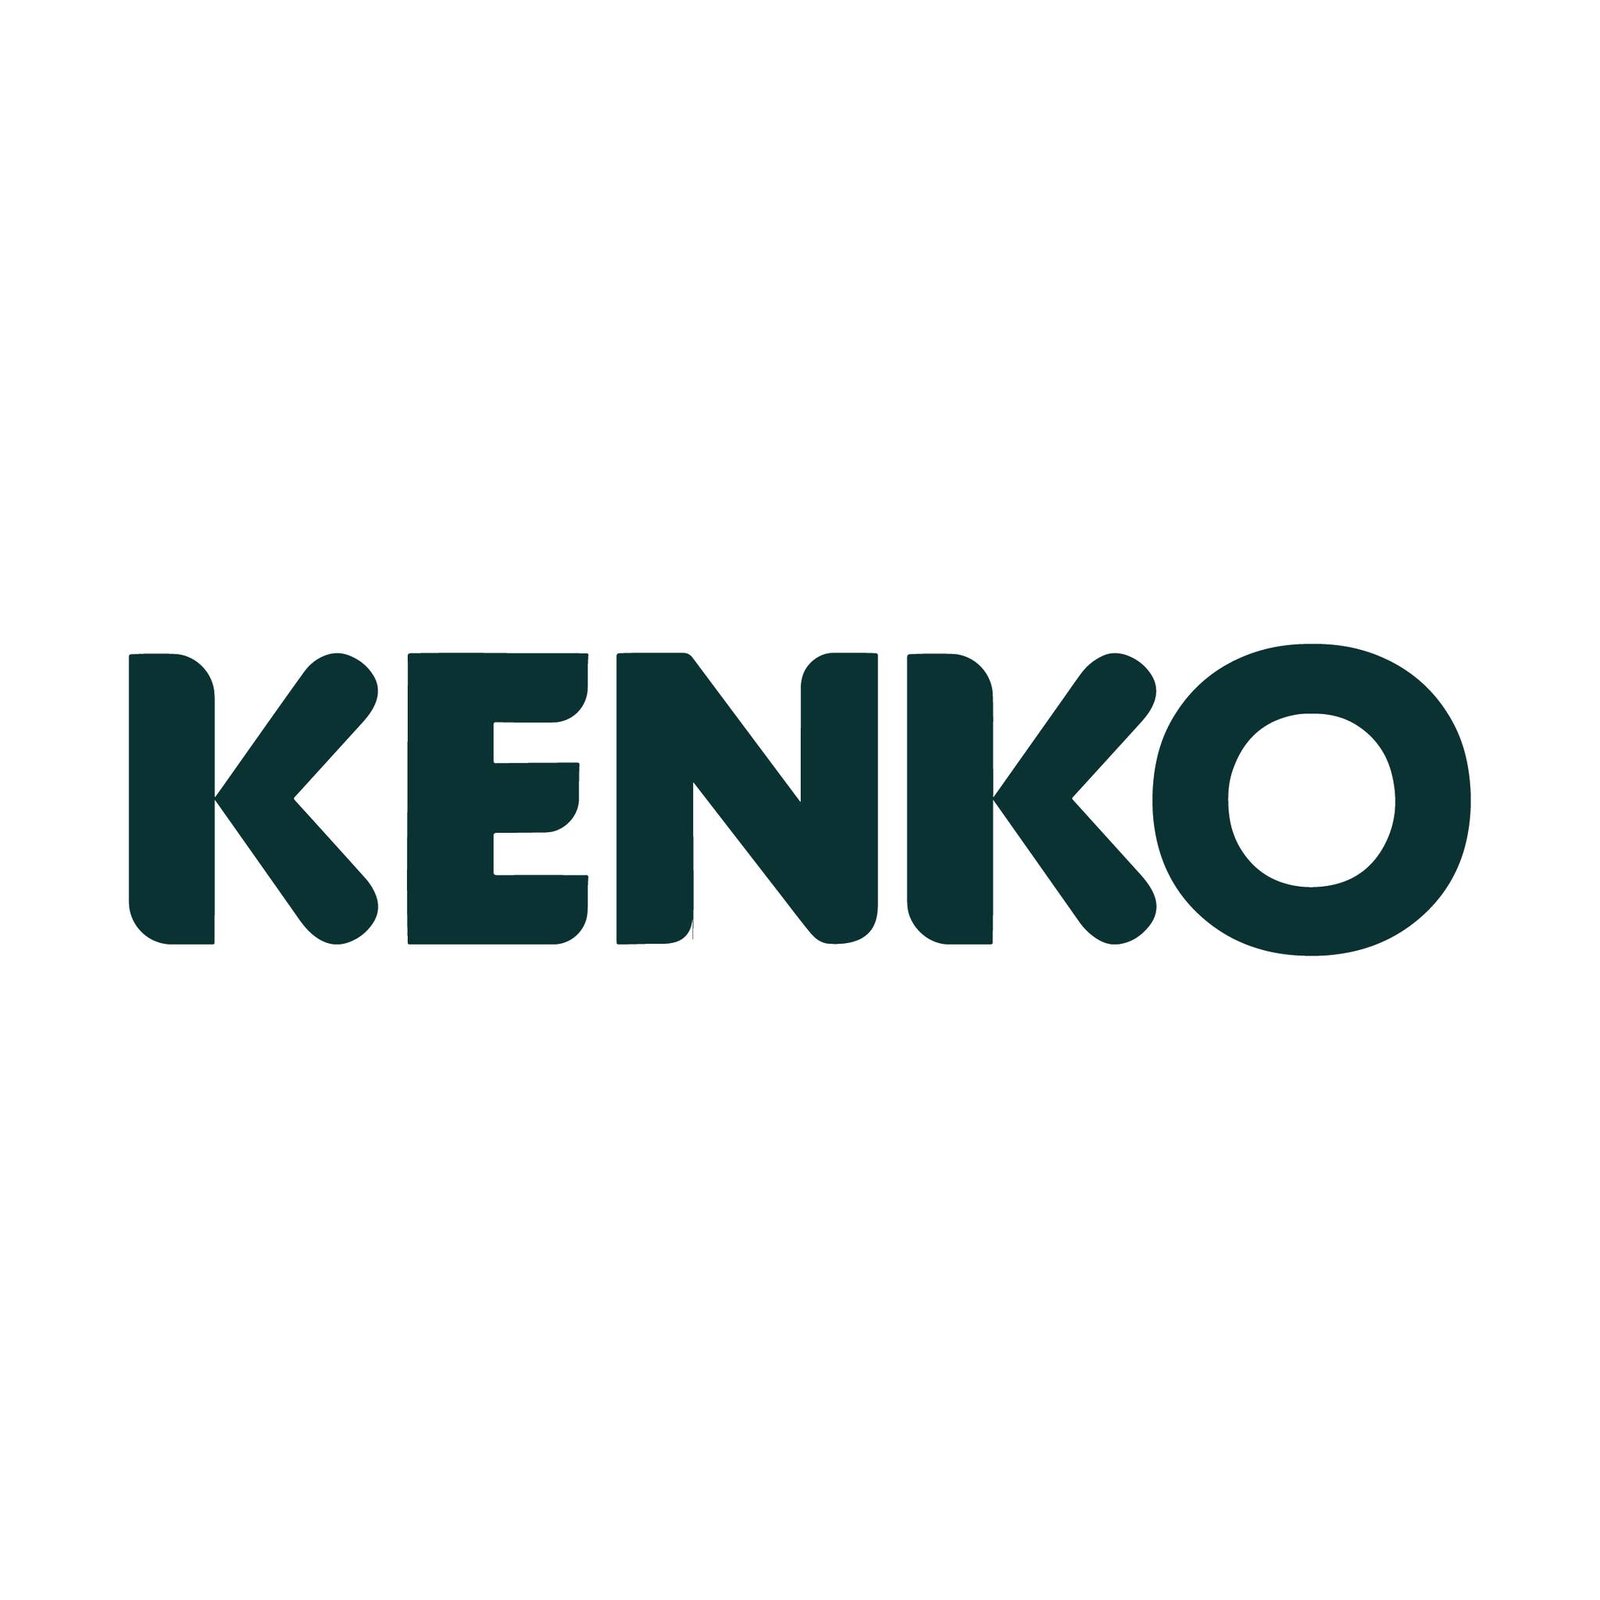 Kenko Health Coupon: Plan Starts At Just Rs 299/Month